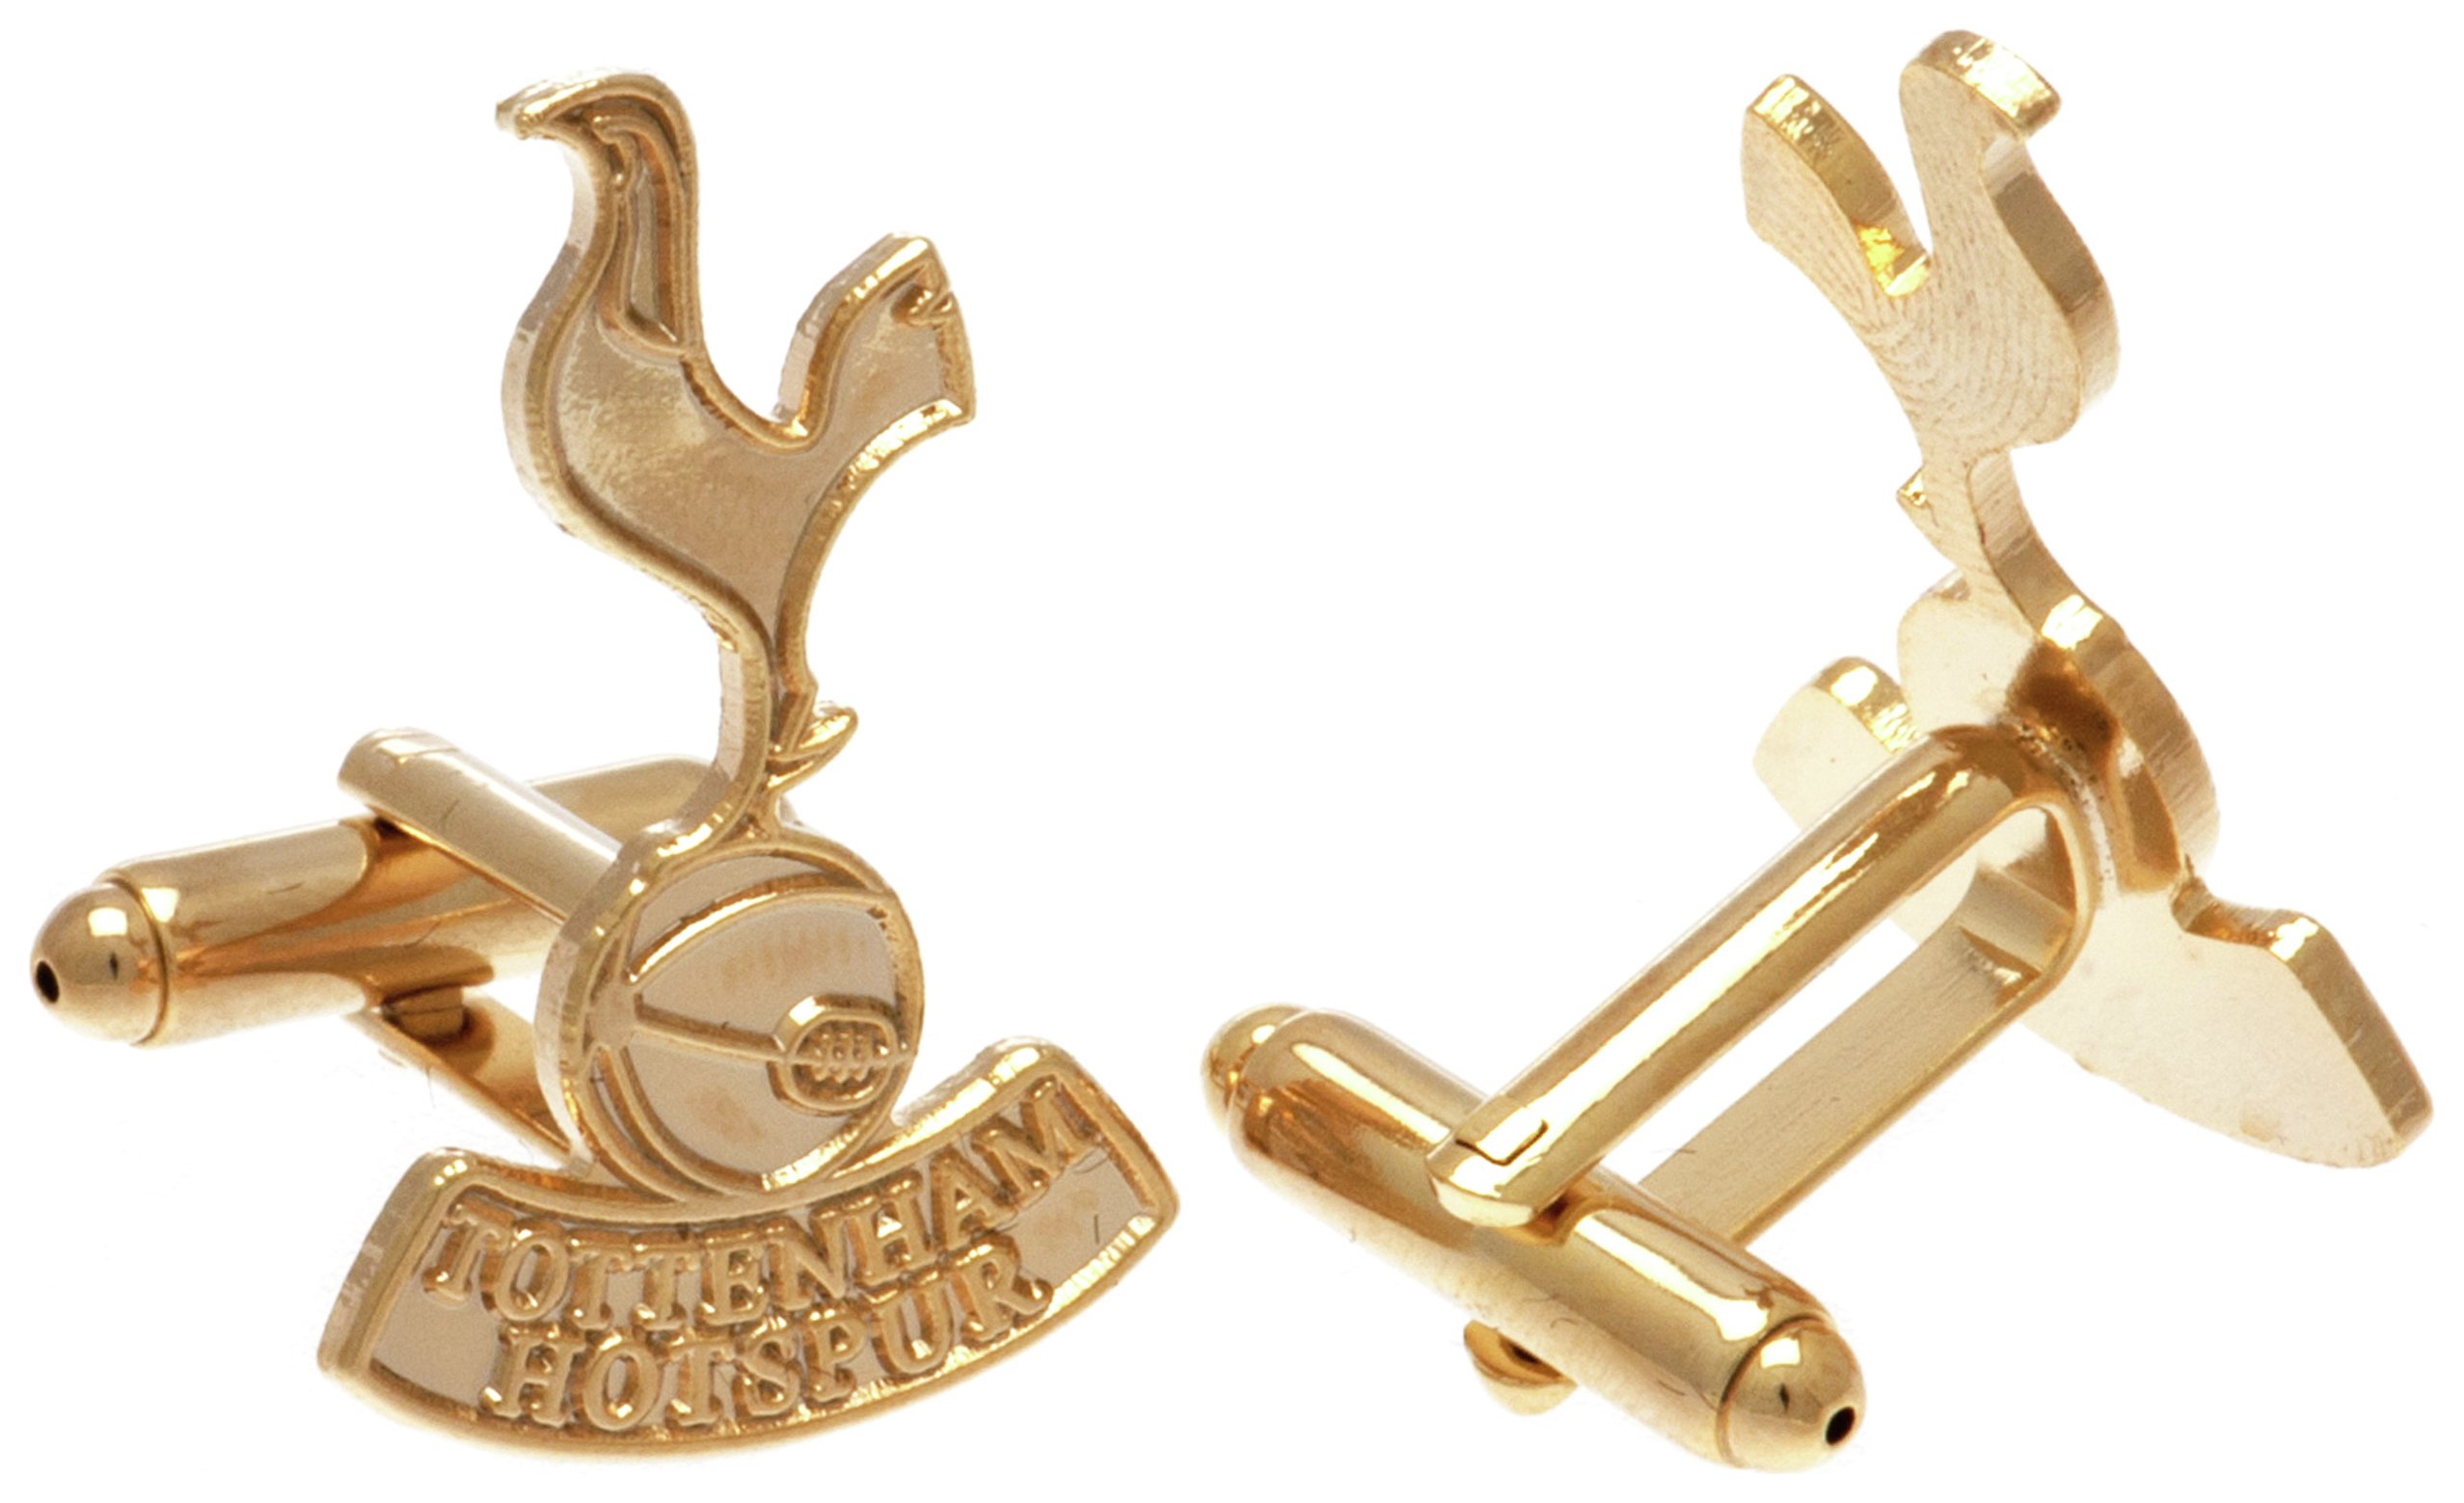 Gold Plated Tottenham Hotspur Cufflinks.